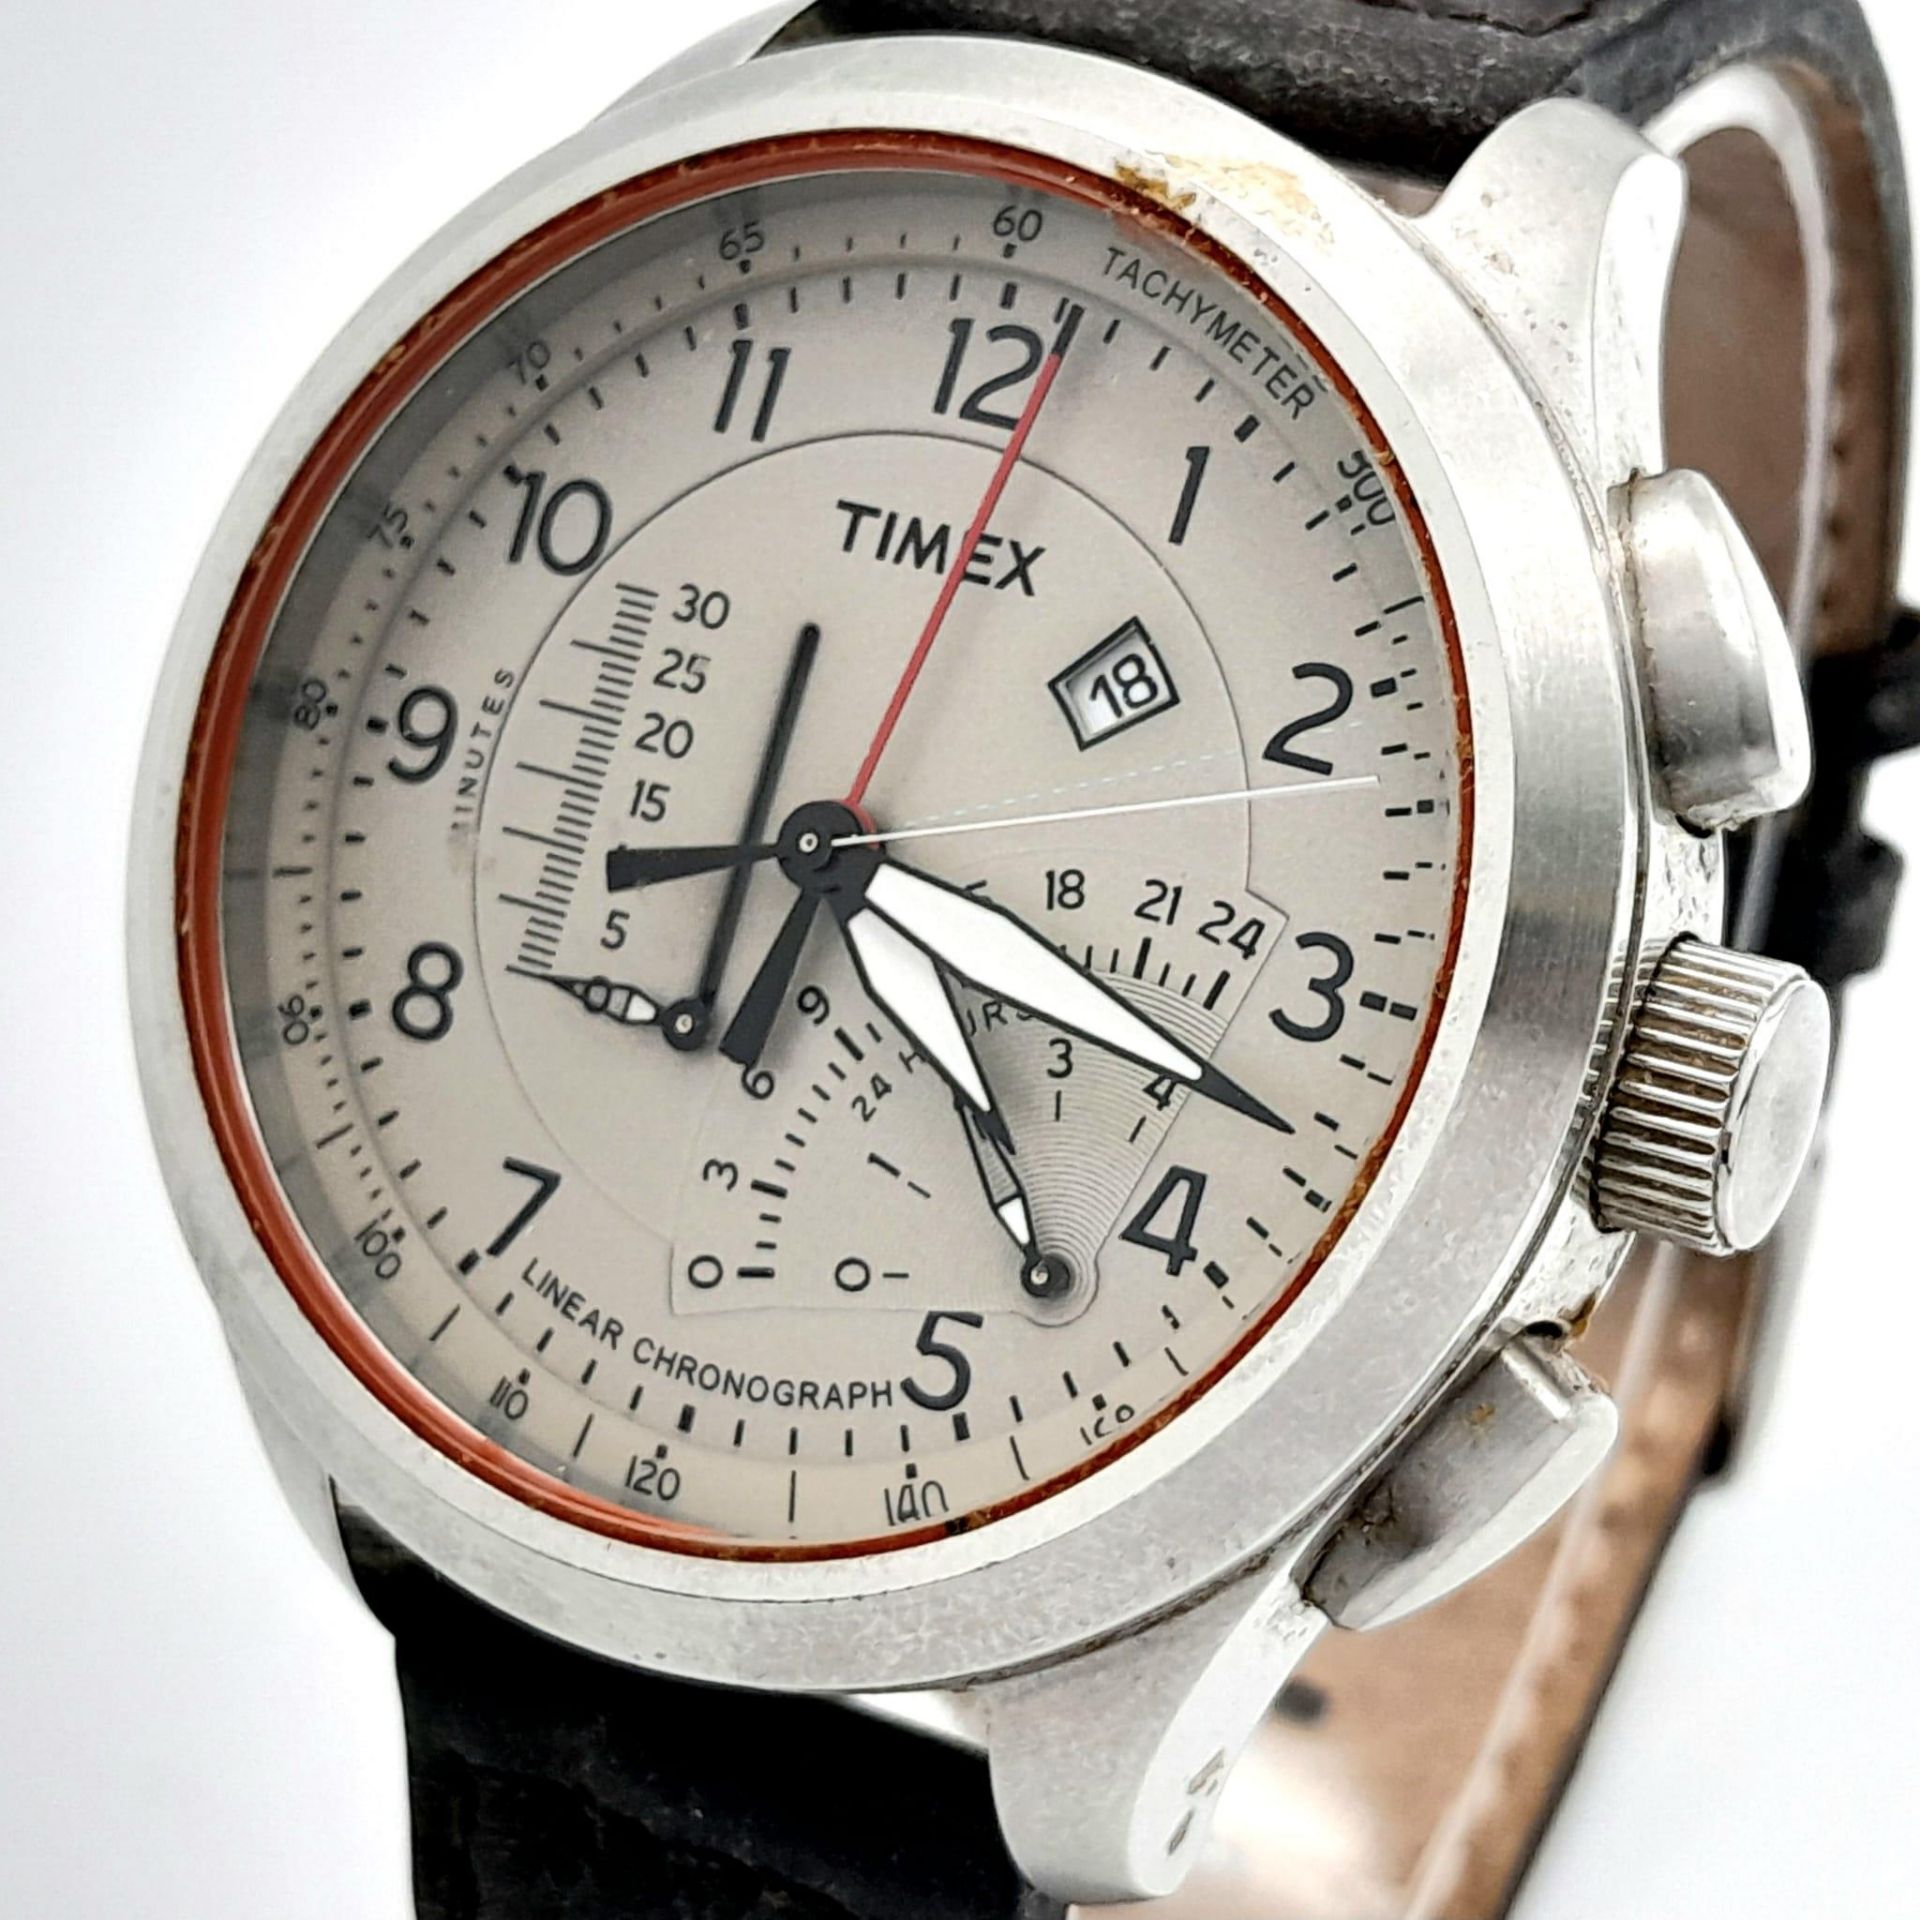 A Timex Intelligent Chronograph Quartz Gents Watch. Brown leather strap. Stainless steel case - - Bild 2 aus 6